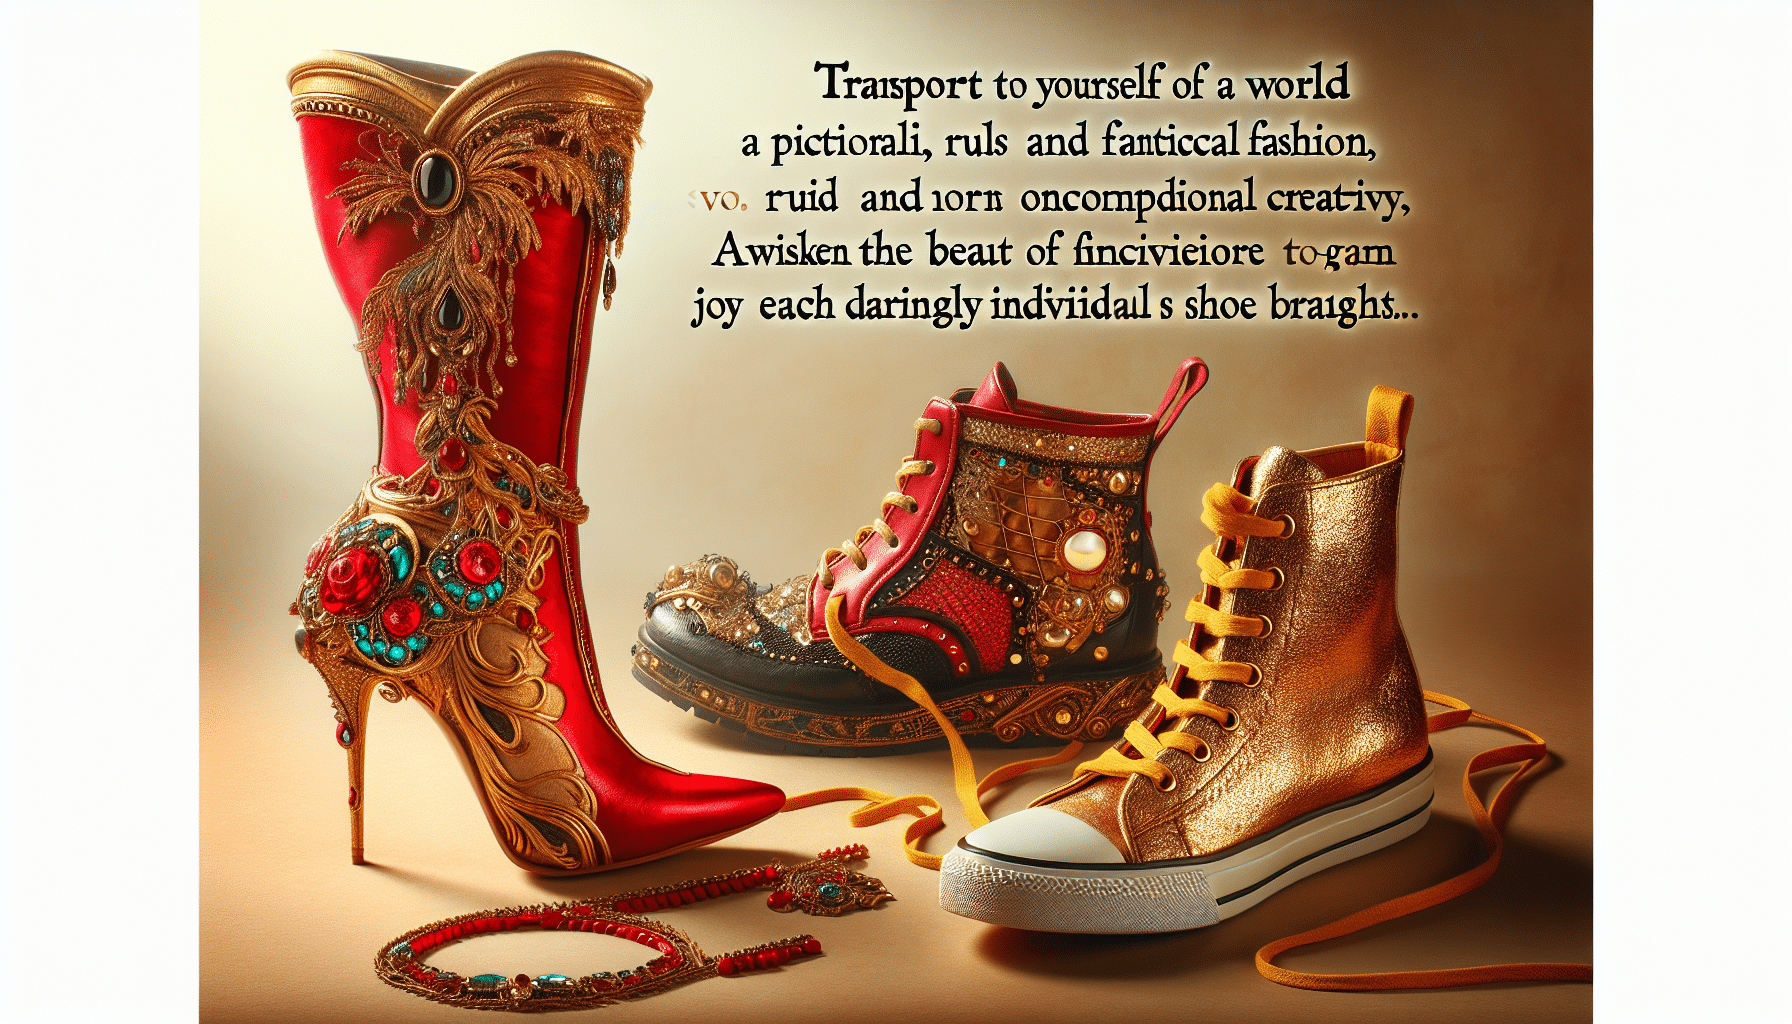 découvrez pourquoi l'idée de porter des chaussures dépareillées peut représenter une forme d'expression unique et originale de votre personnalité et de votre style.